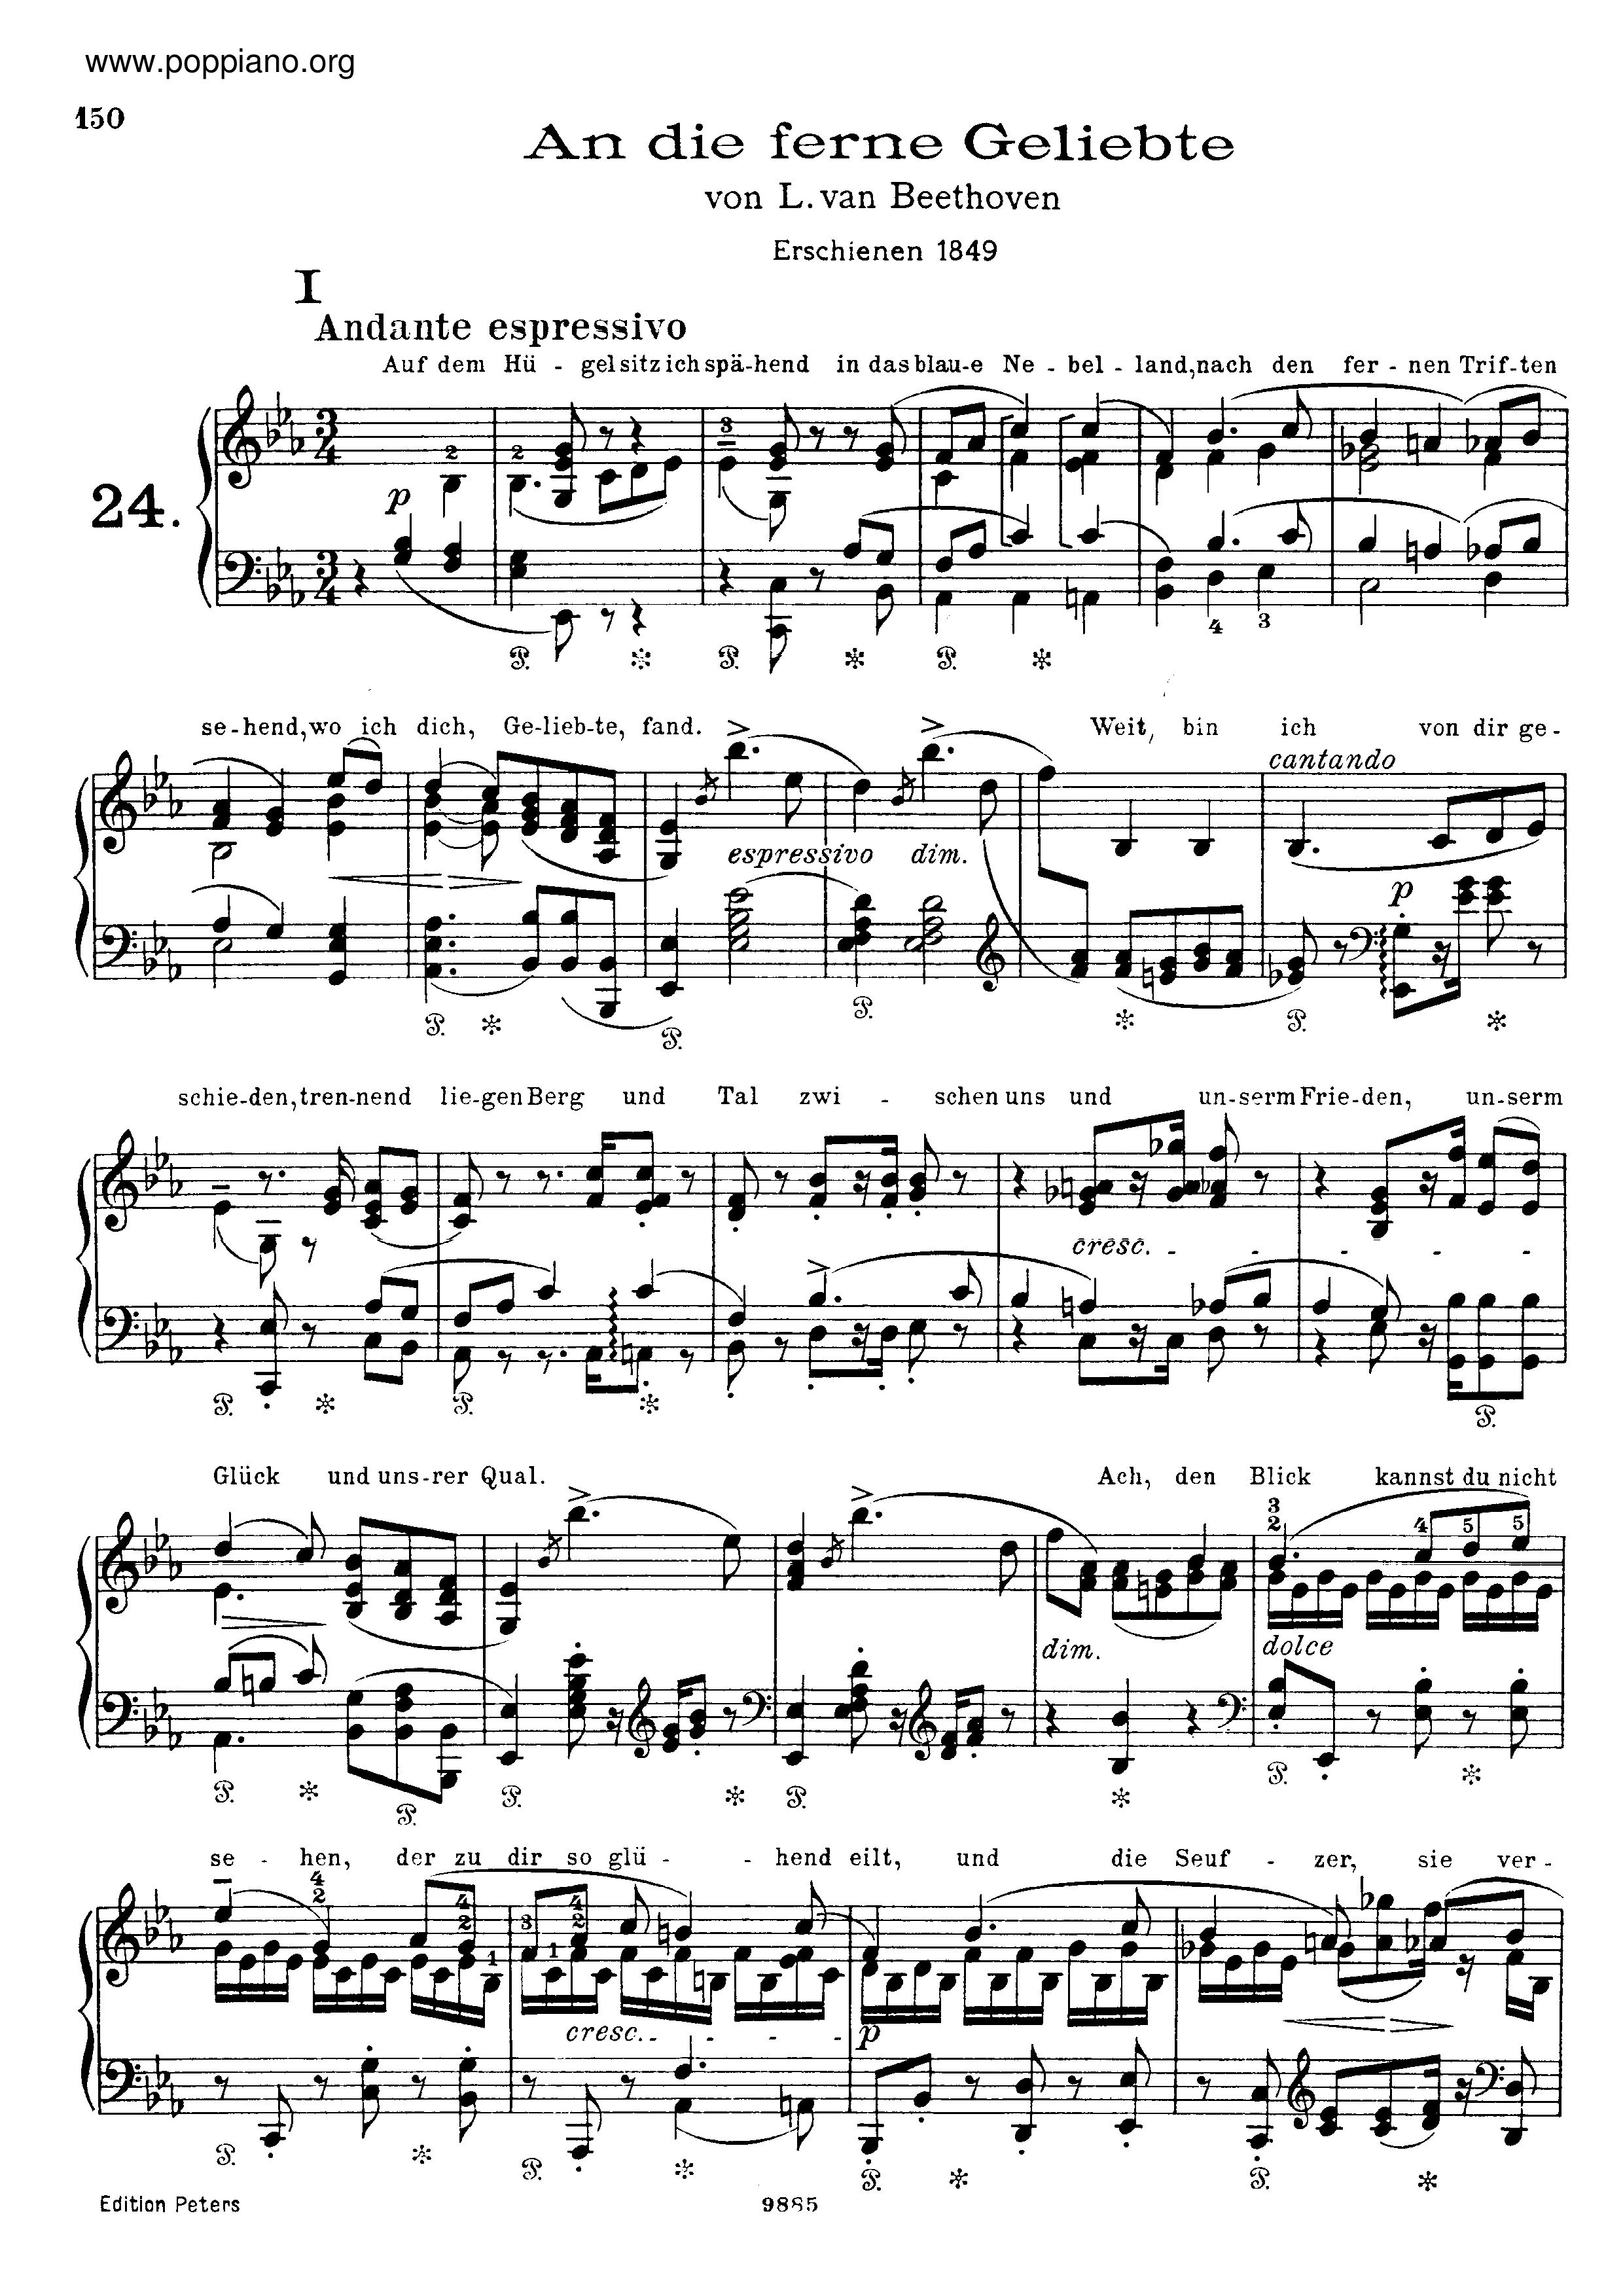 An die ferne Geliebte, by Beethoven, S.469ピアノ譜